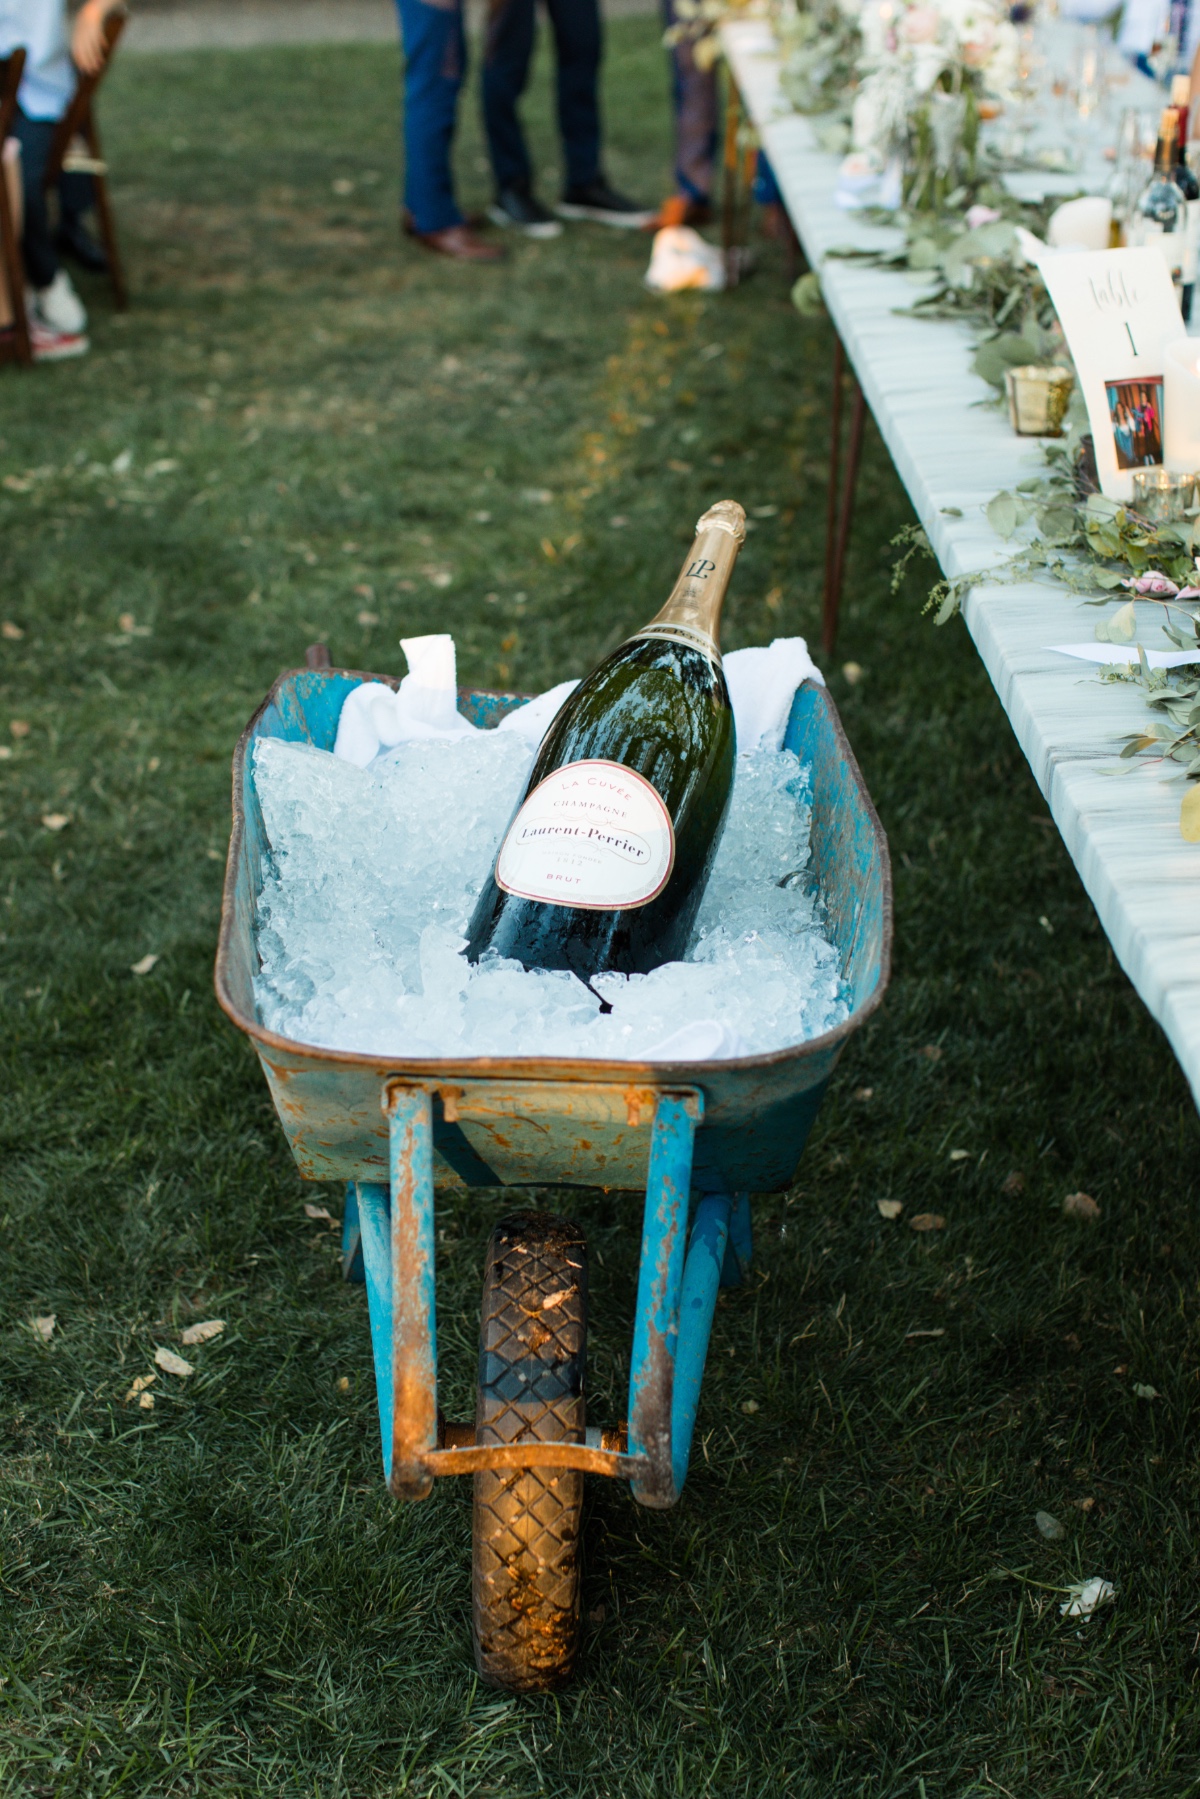 giant bottle of champange in a wheel barrow